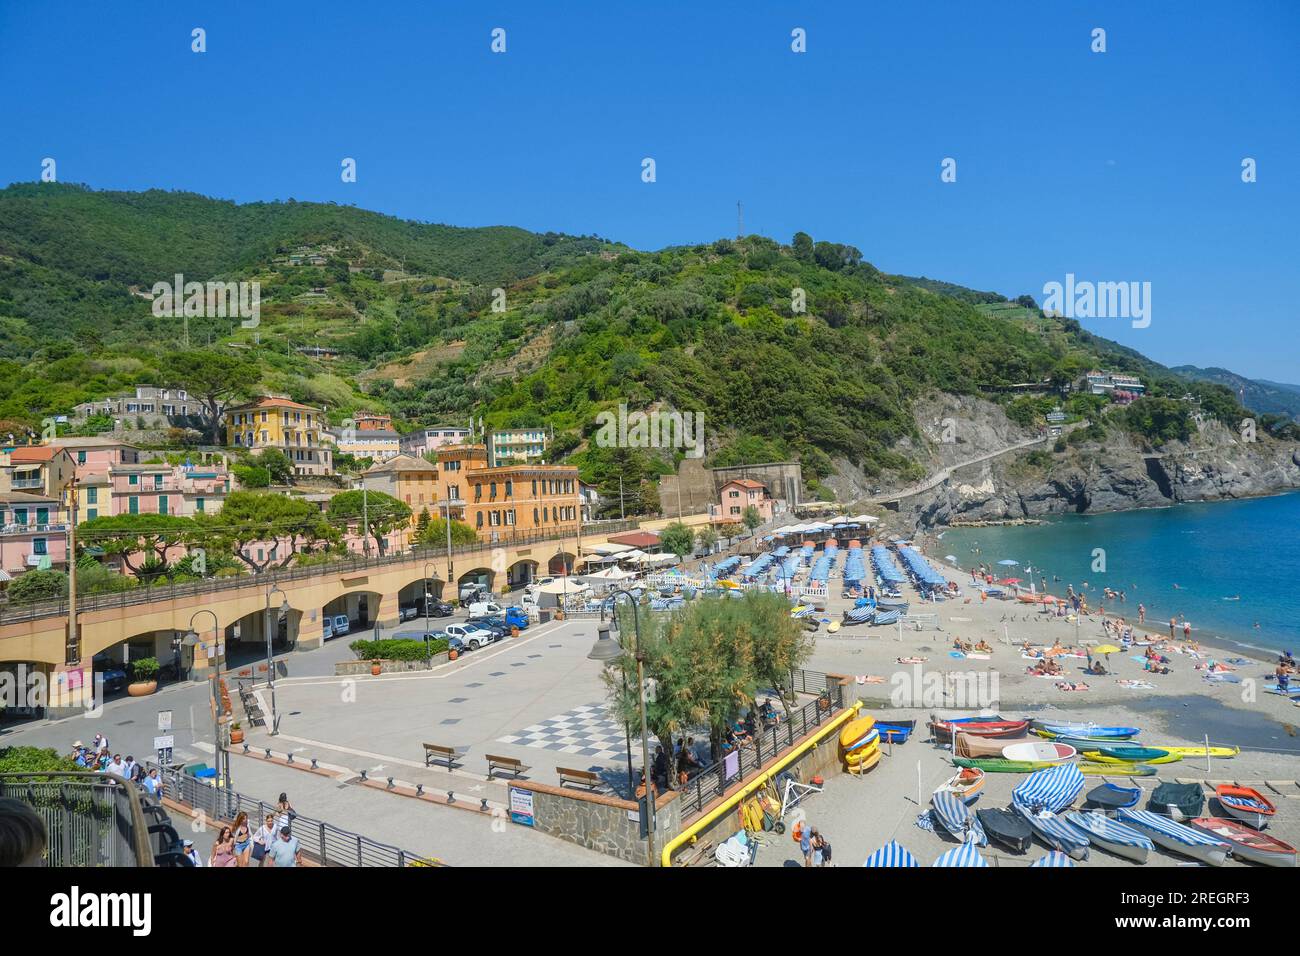 Vue aérienne sur les chaises de plage et parasols, les maisons et le train ferroviaire à Monterosso, Cinque Terre, la mer Ligurie, Ligurie, Italie, Riviera italienne Banque D'Images